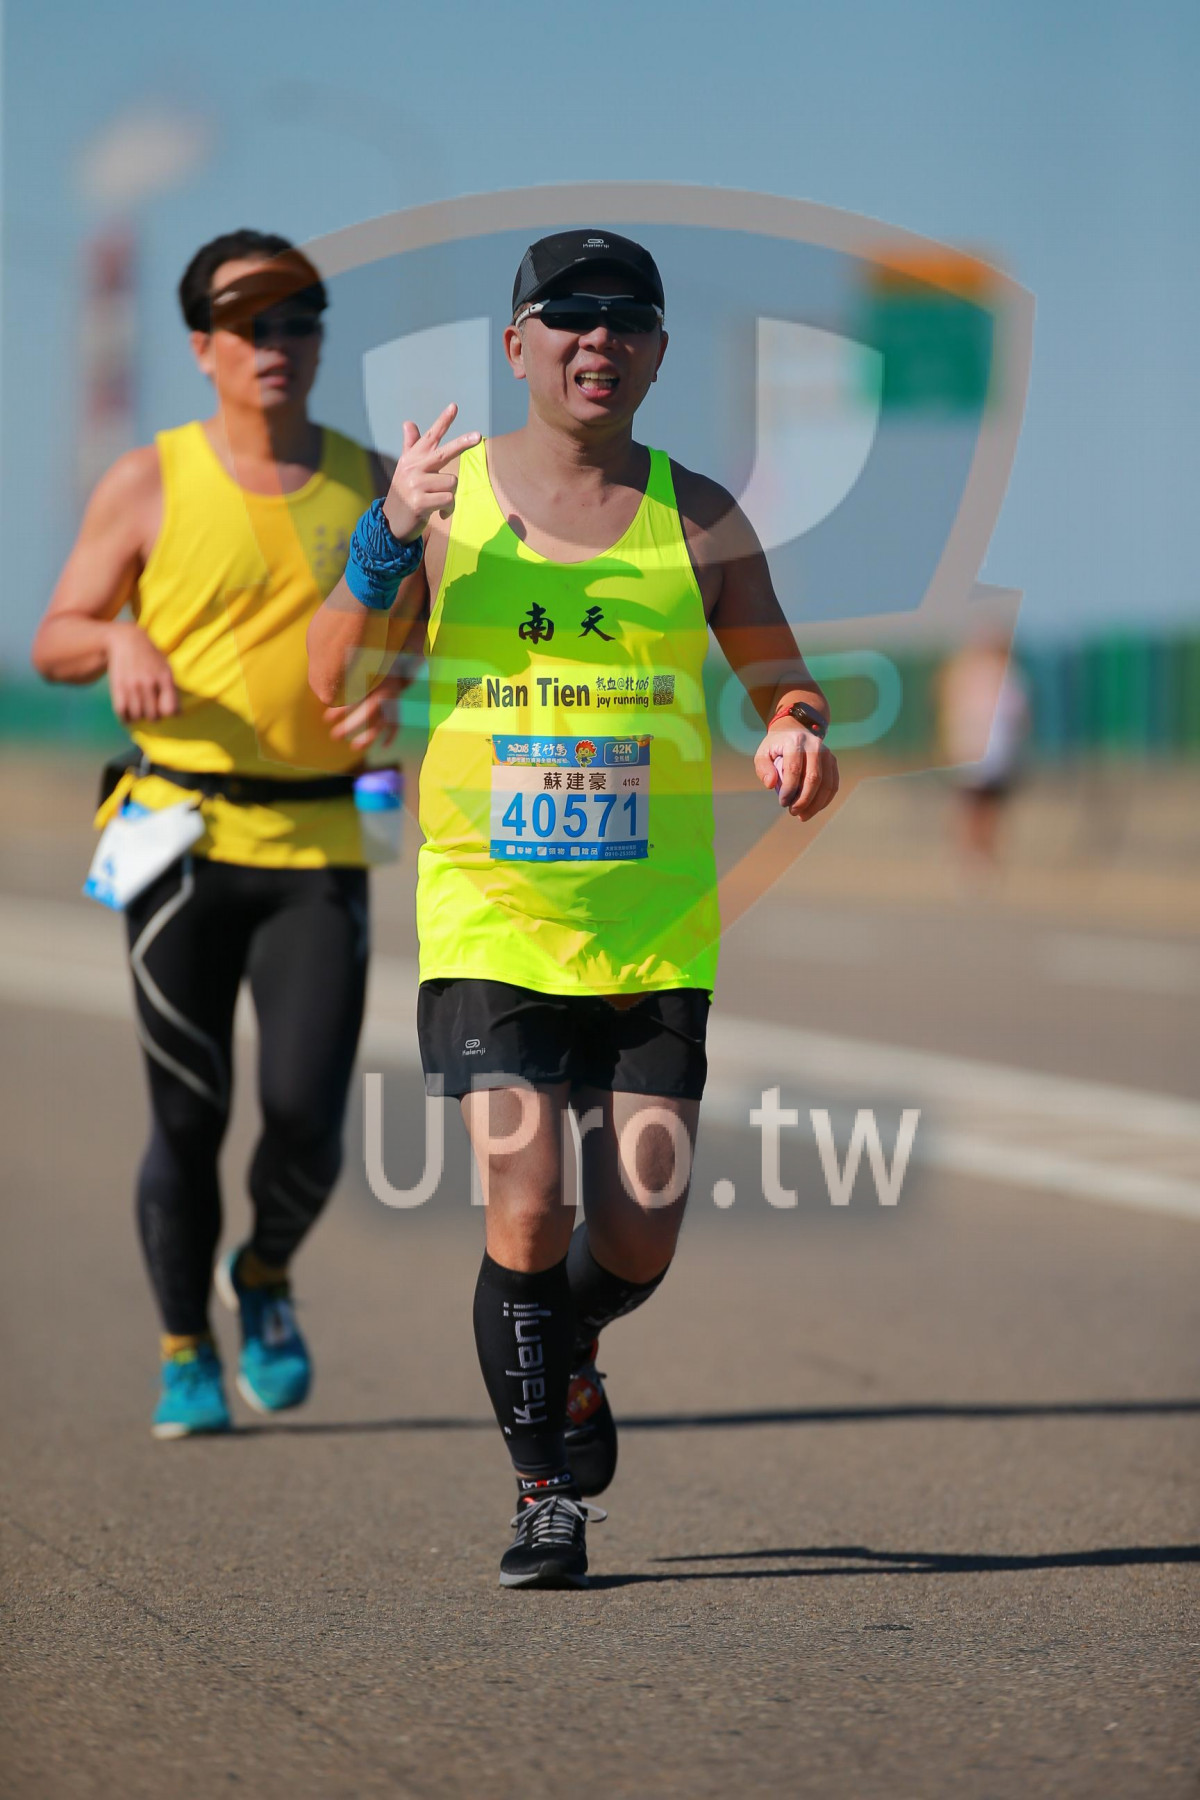 Nan Tien,joy running,42K,4162,40571|07:50~09:04|jay lee